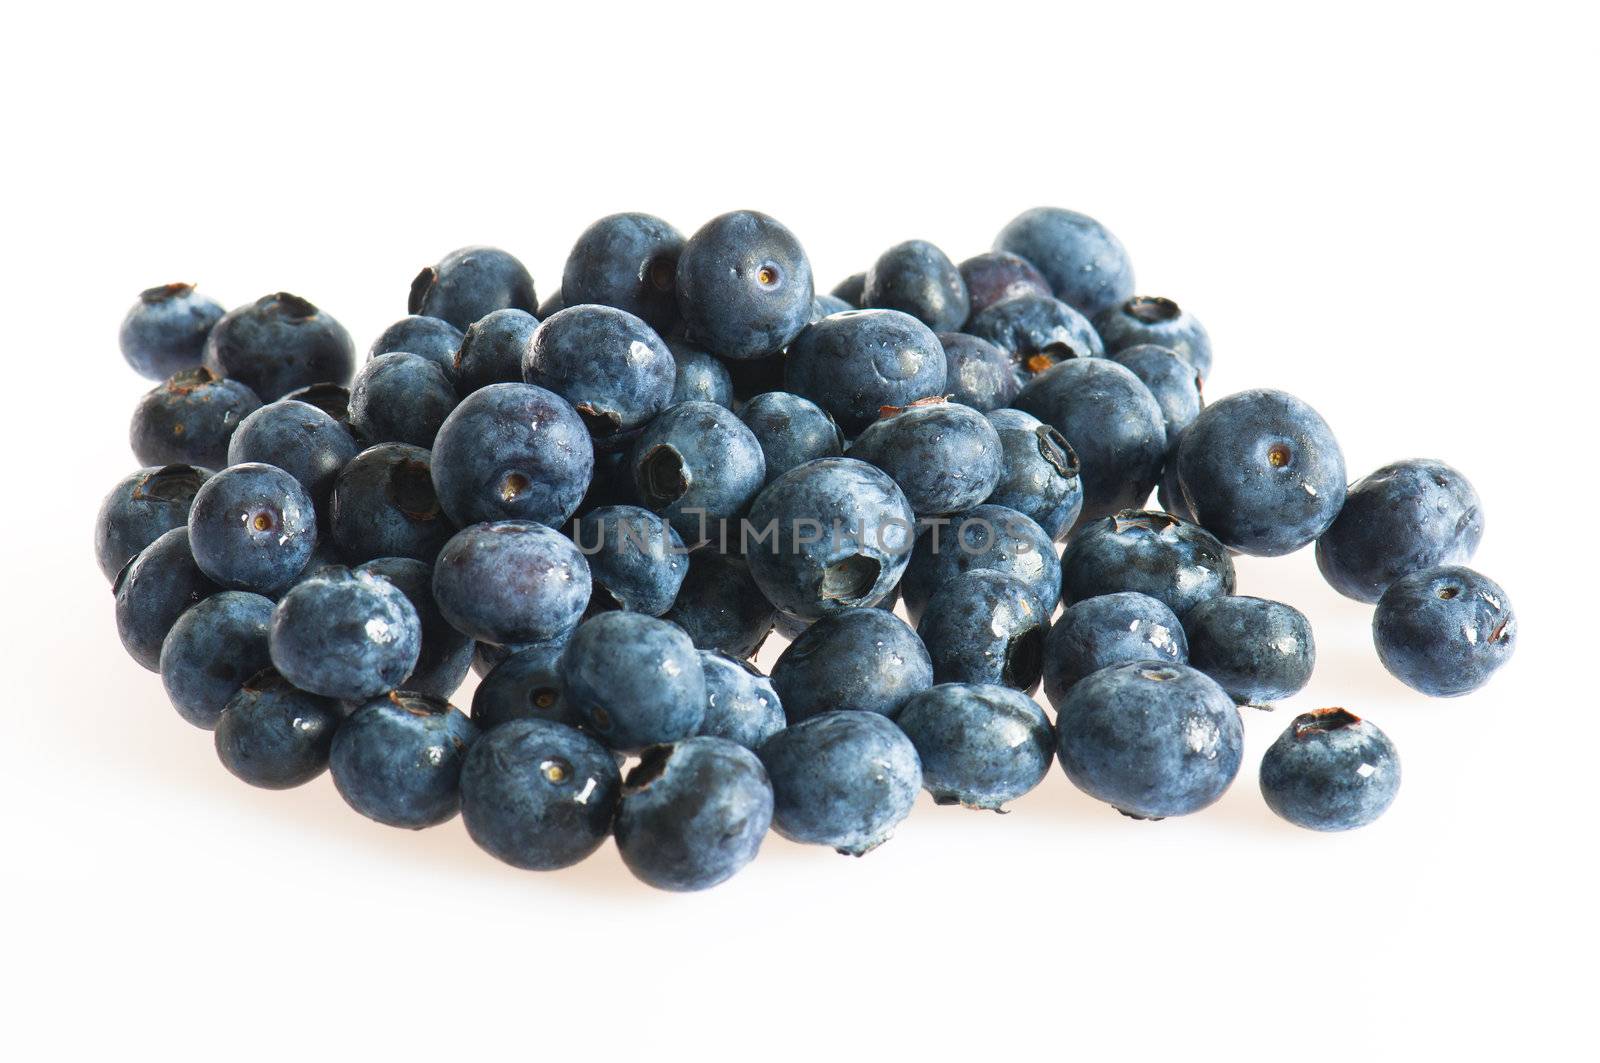 Blueberries over white